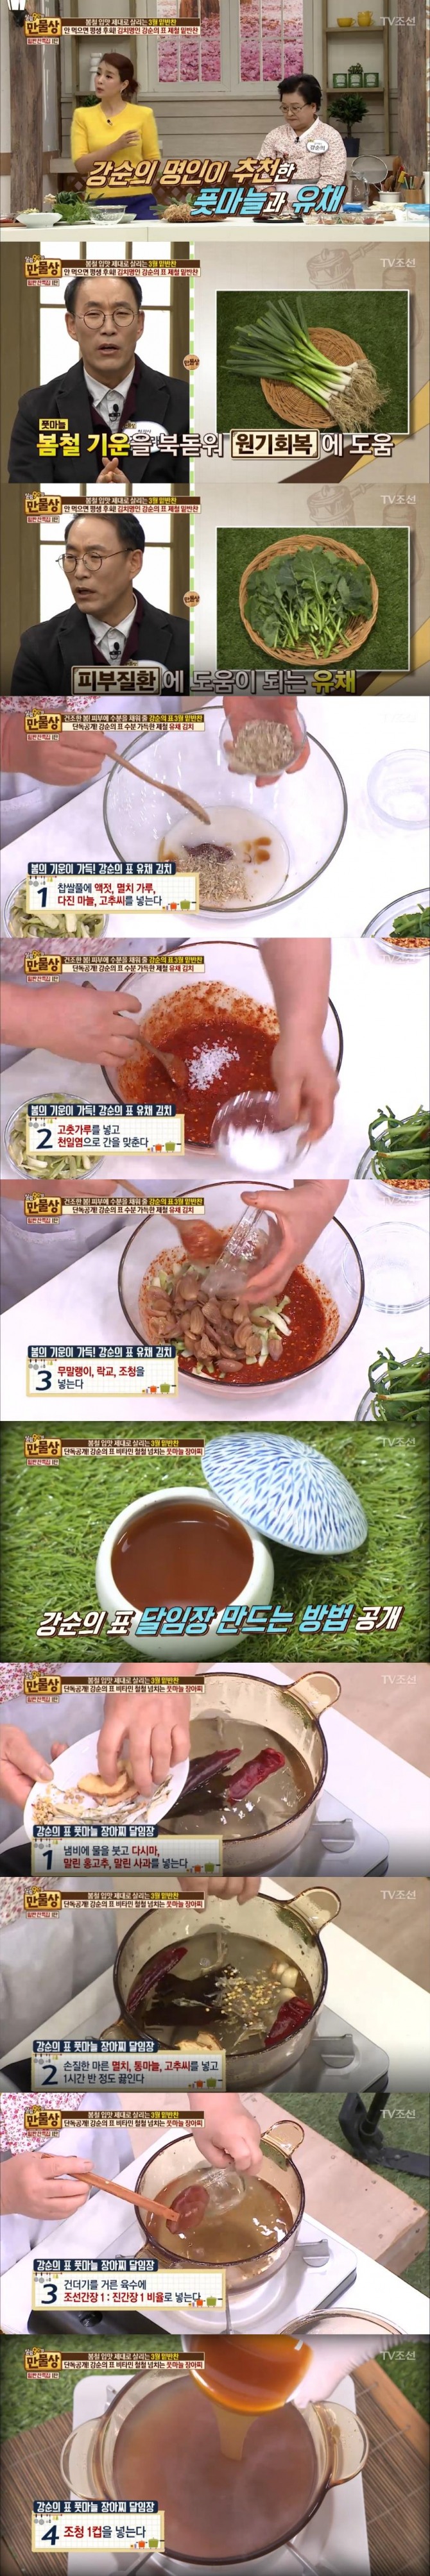 5일 방송된 TV조선 '살림9단의 만물상'에서는 강순의 김치명인이 출연, 봄철 밑반찬으로 유채김치 레시피를 공개했다./사진=TV 조선 방송 캡처 